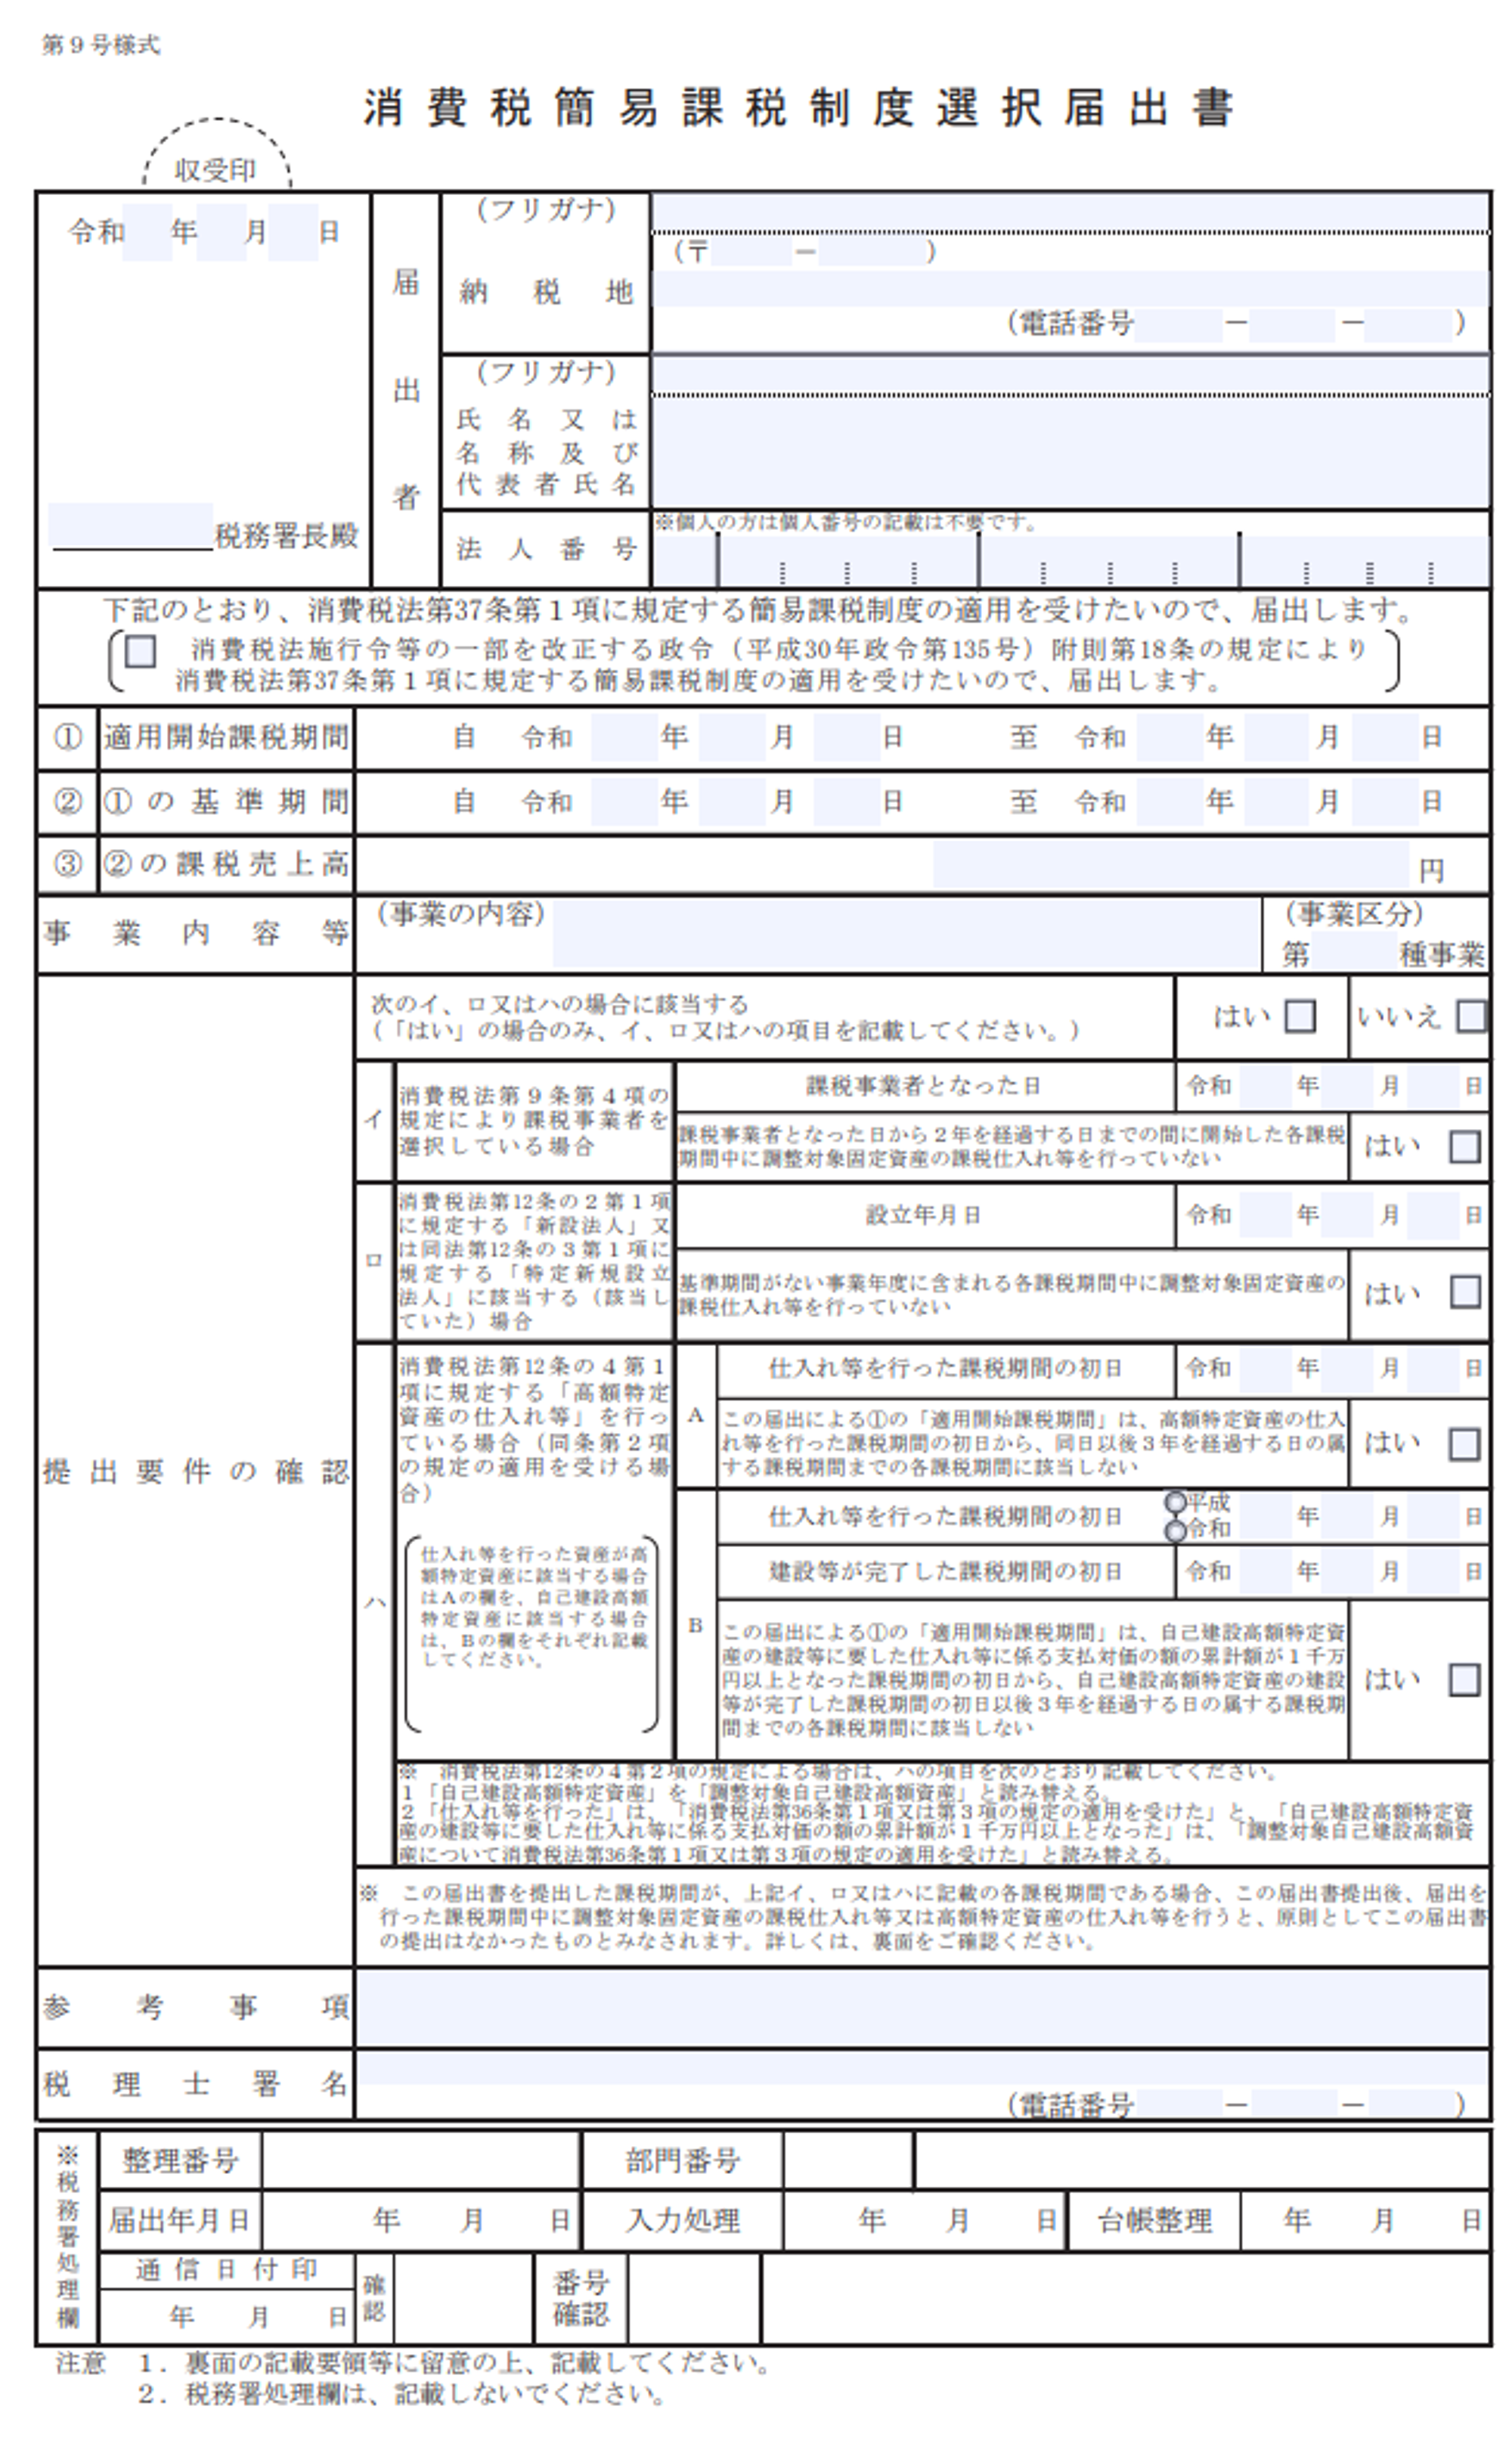 https://www.nta.go.jp/taxes/tetsuzuki/shinsei/annai/shohi/annai/pdf/1461_13.pdf